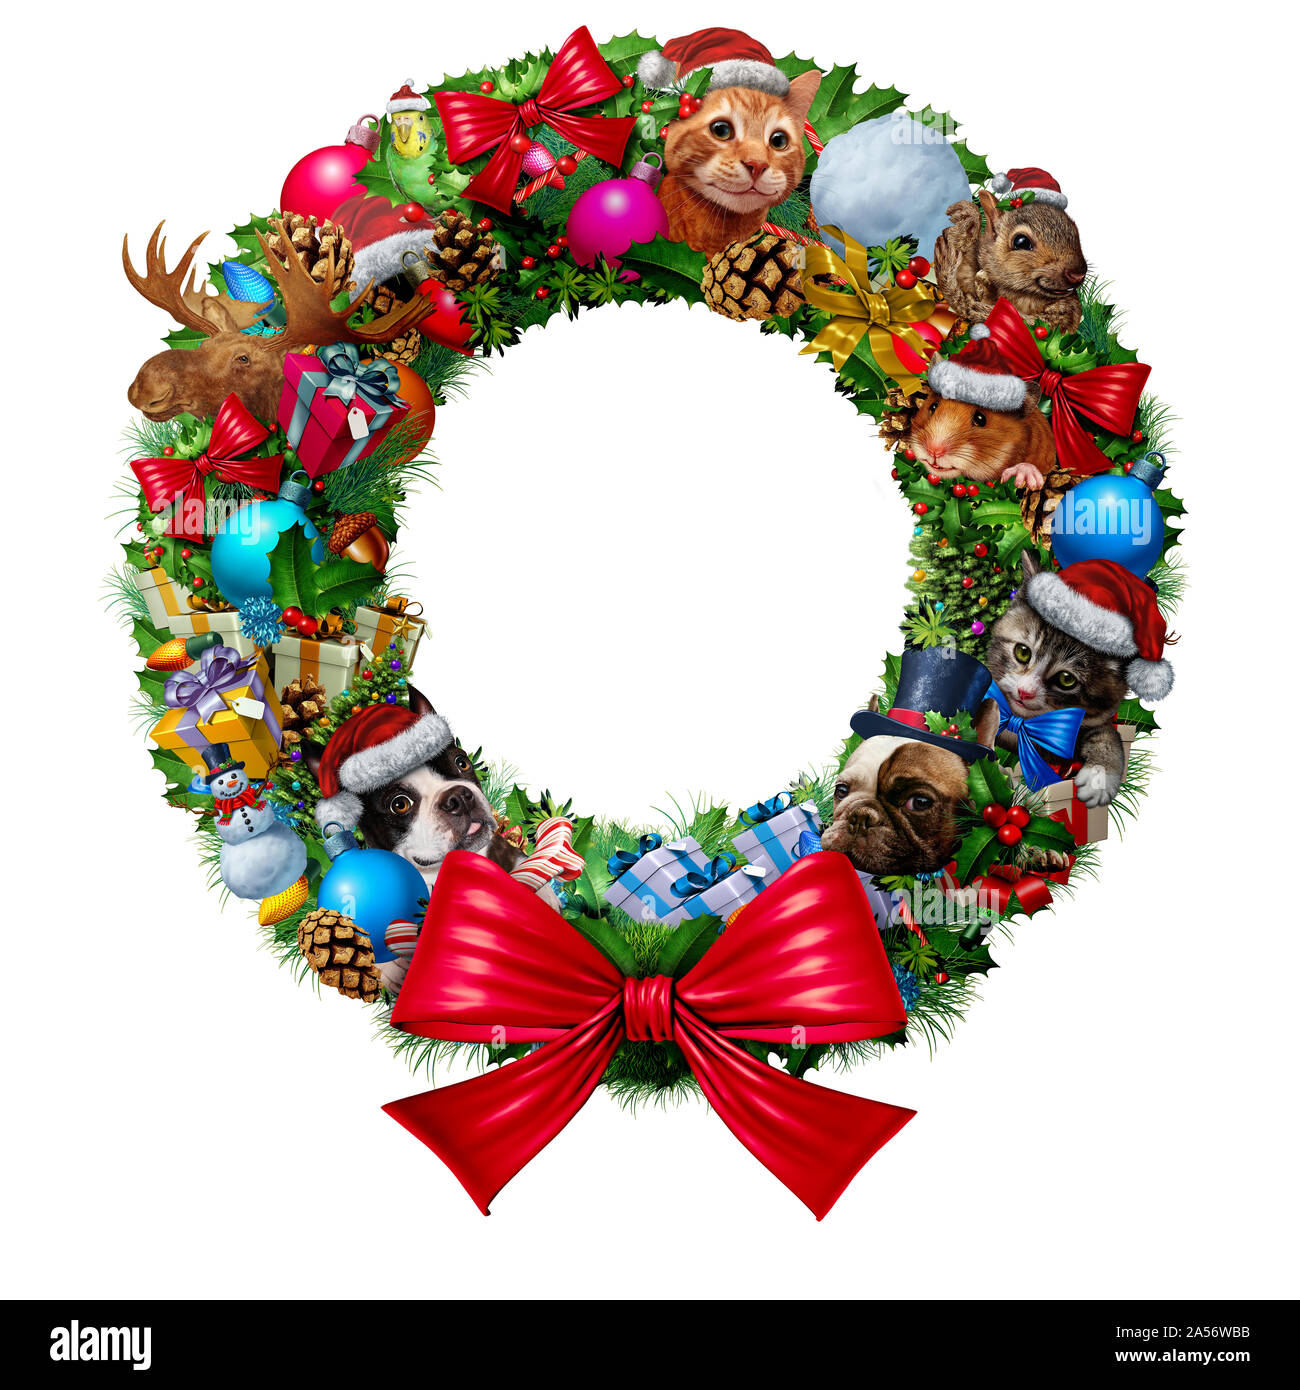 Decoración de Navidad como un círculo banner con vintage decorativos invierno festivos adornos y ramas de pino con animalitos y mascotas. Foto de stock